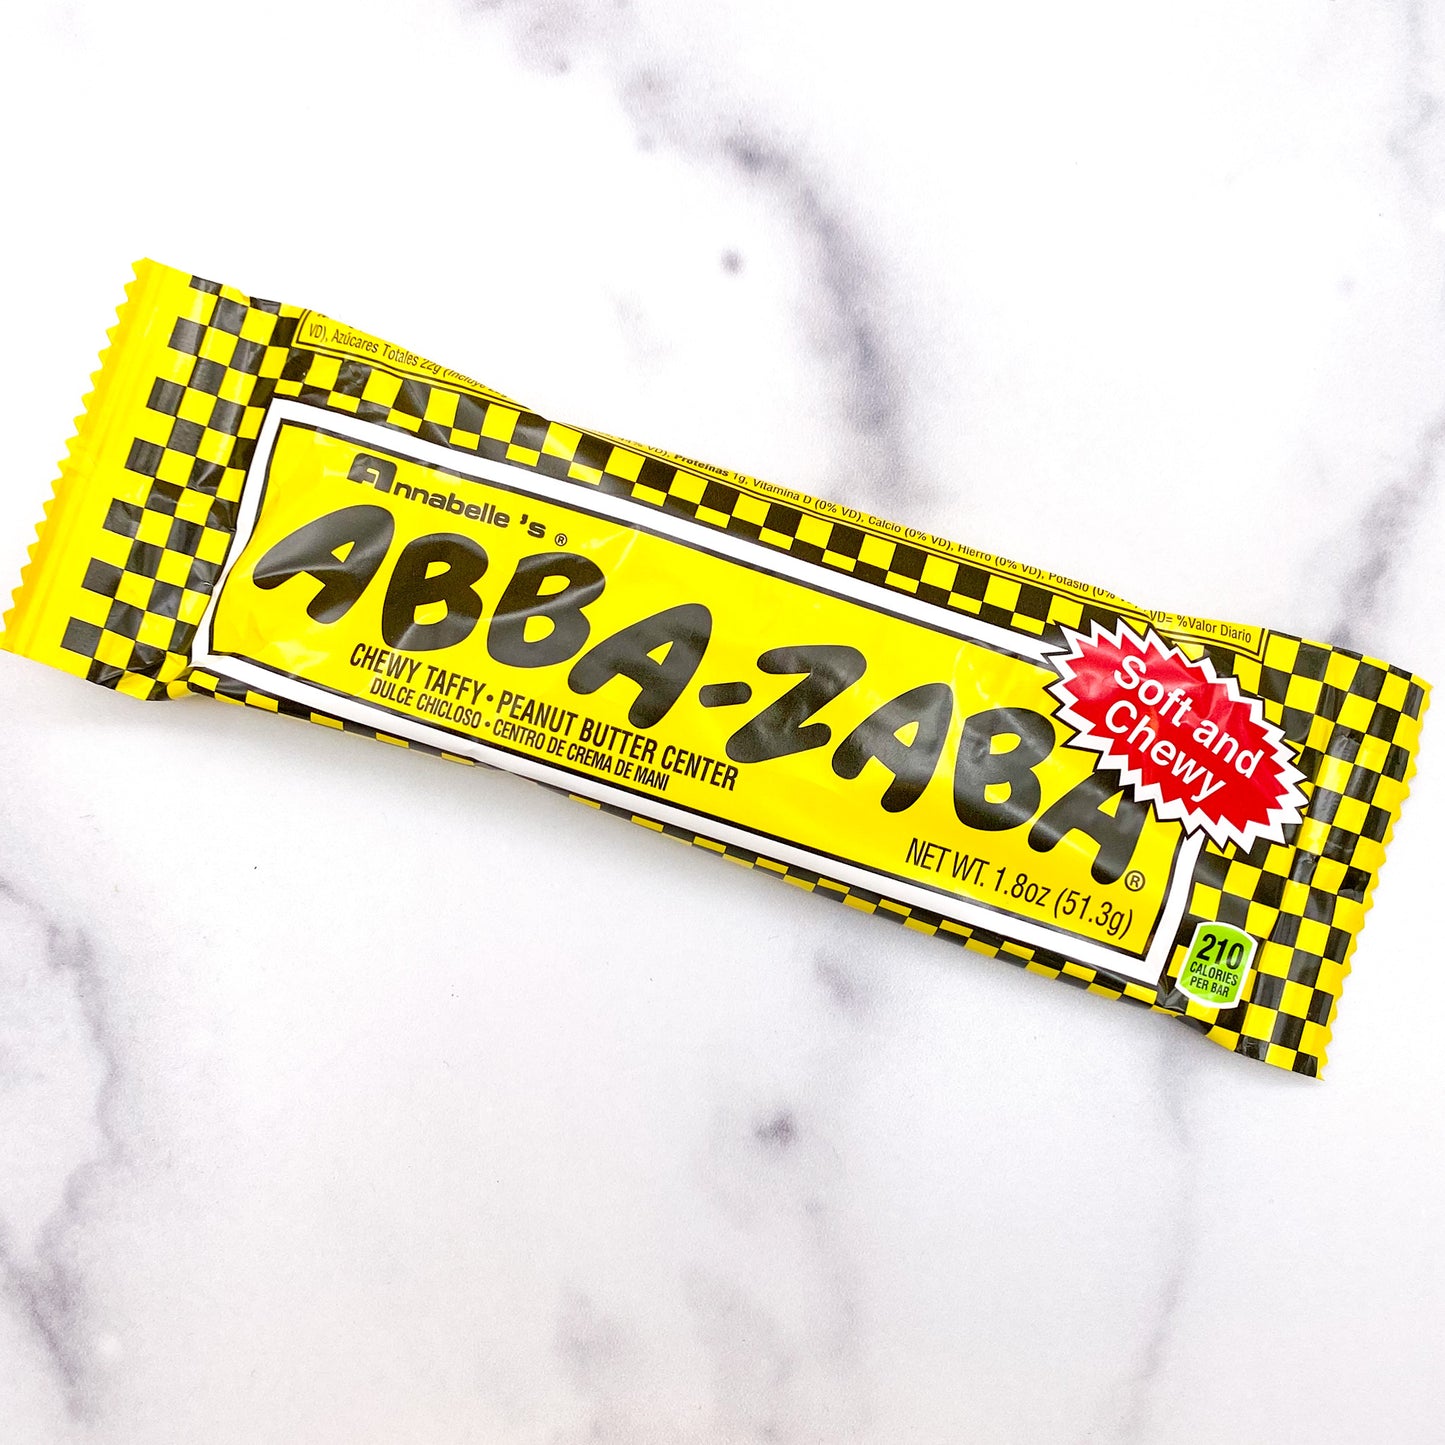 Abba Zabba Bar